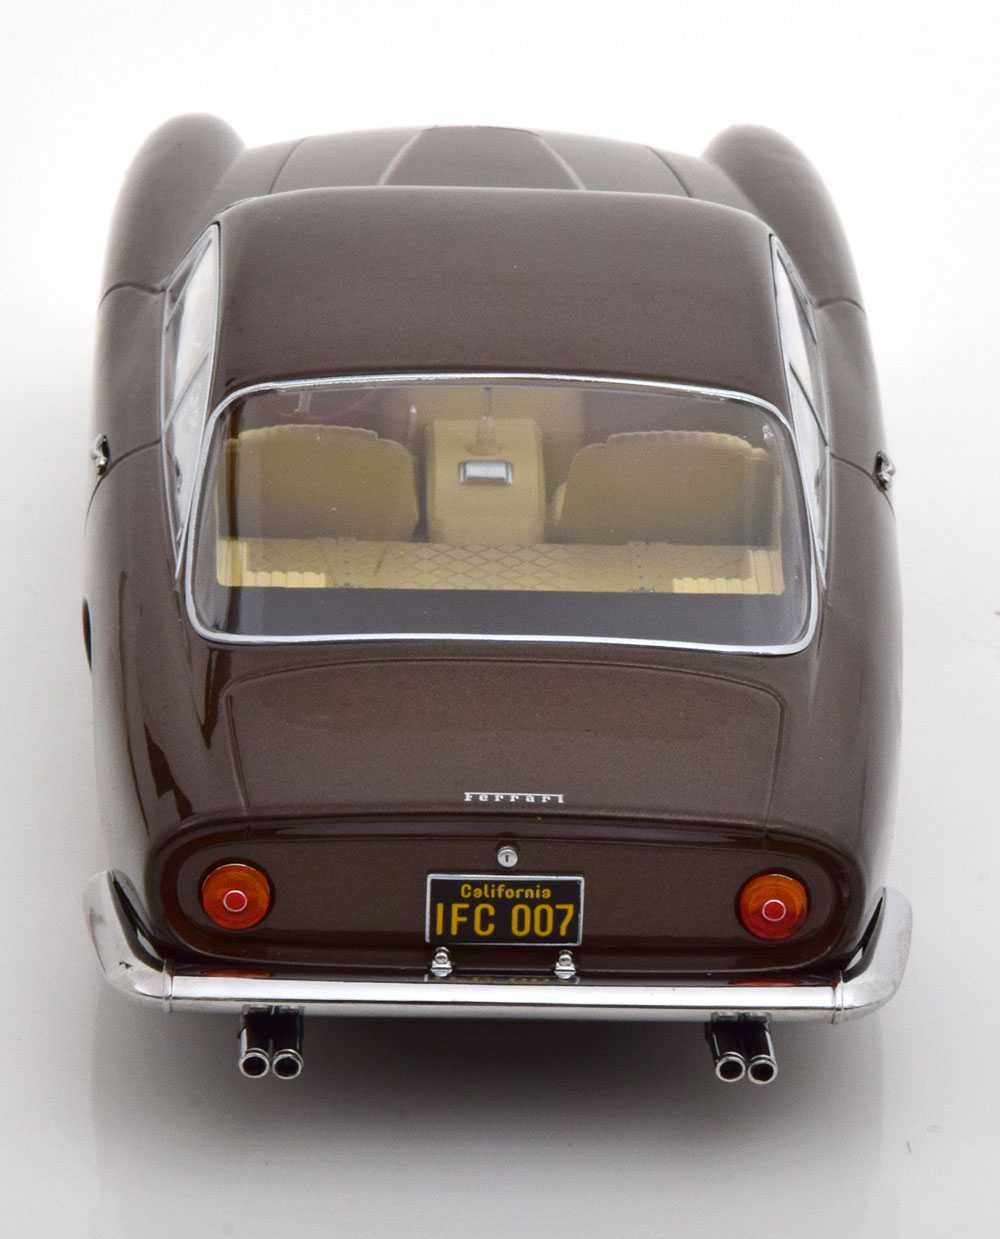 Model 1:18 KK-Scale Ferrari 250 GT Lusso 1962 brown metallic